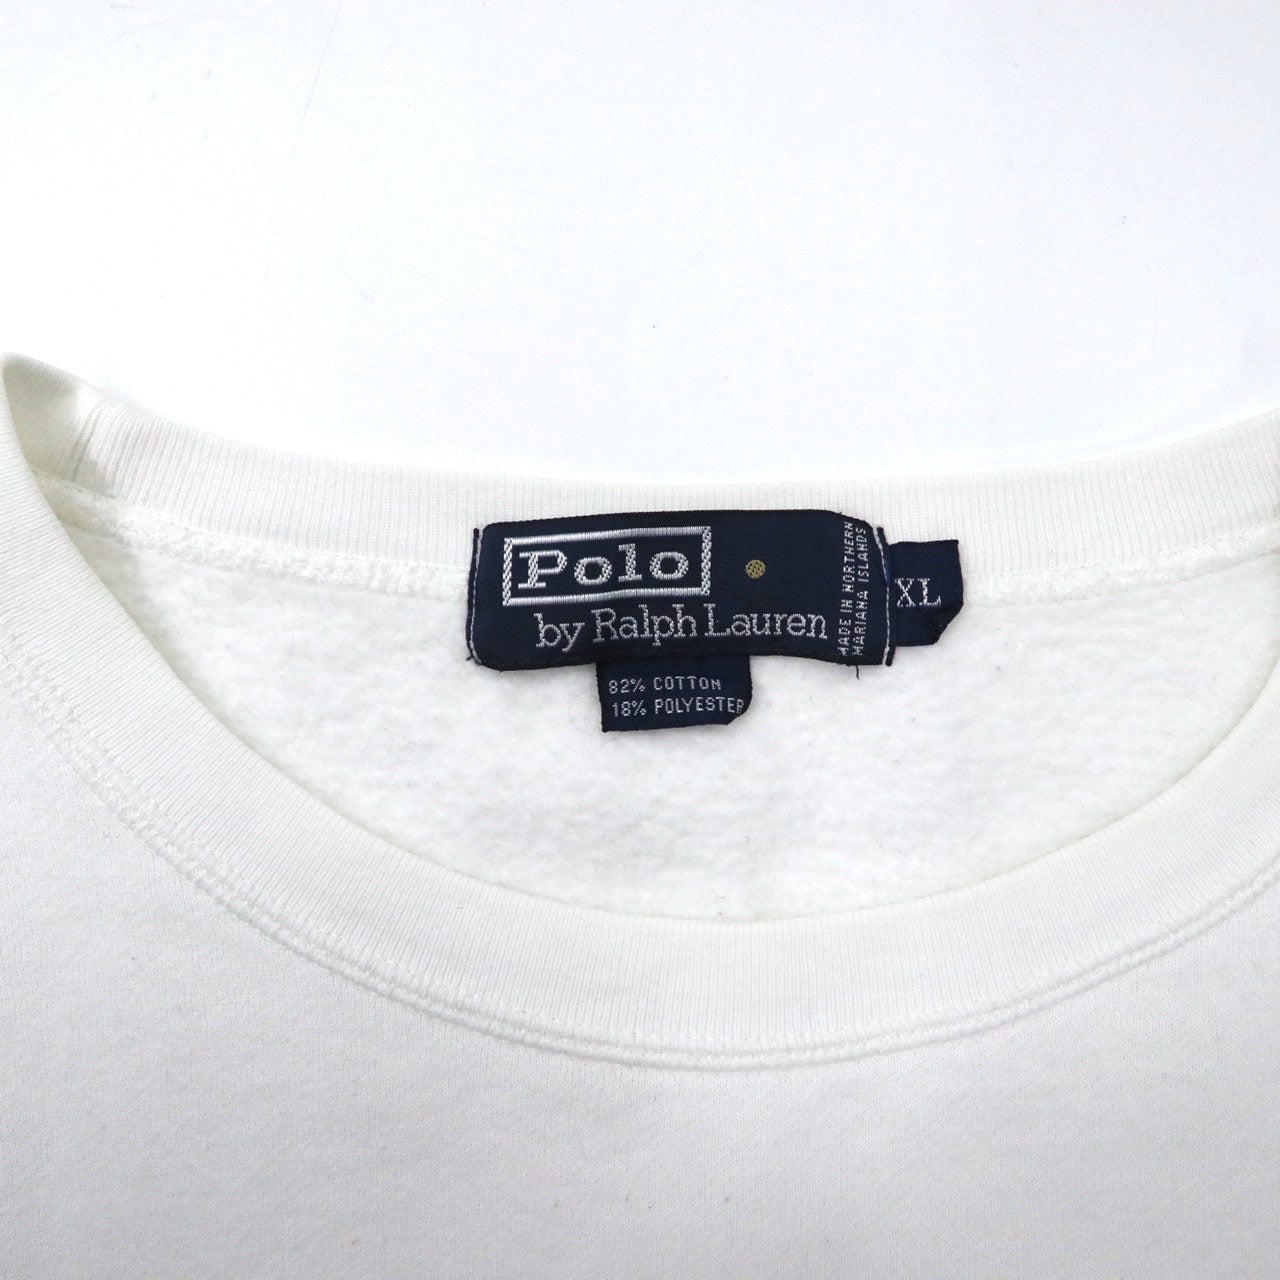 Polo by Ralph Lauren ビッグサイズ スウェット XL ホワイト コットン 裏起毛 スモールポニー刺繍